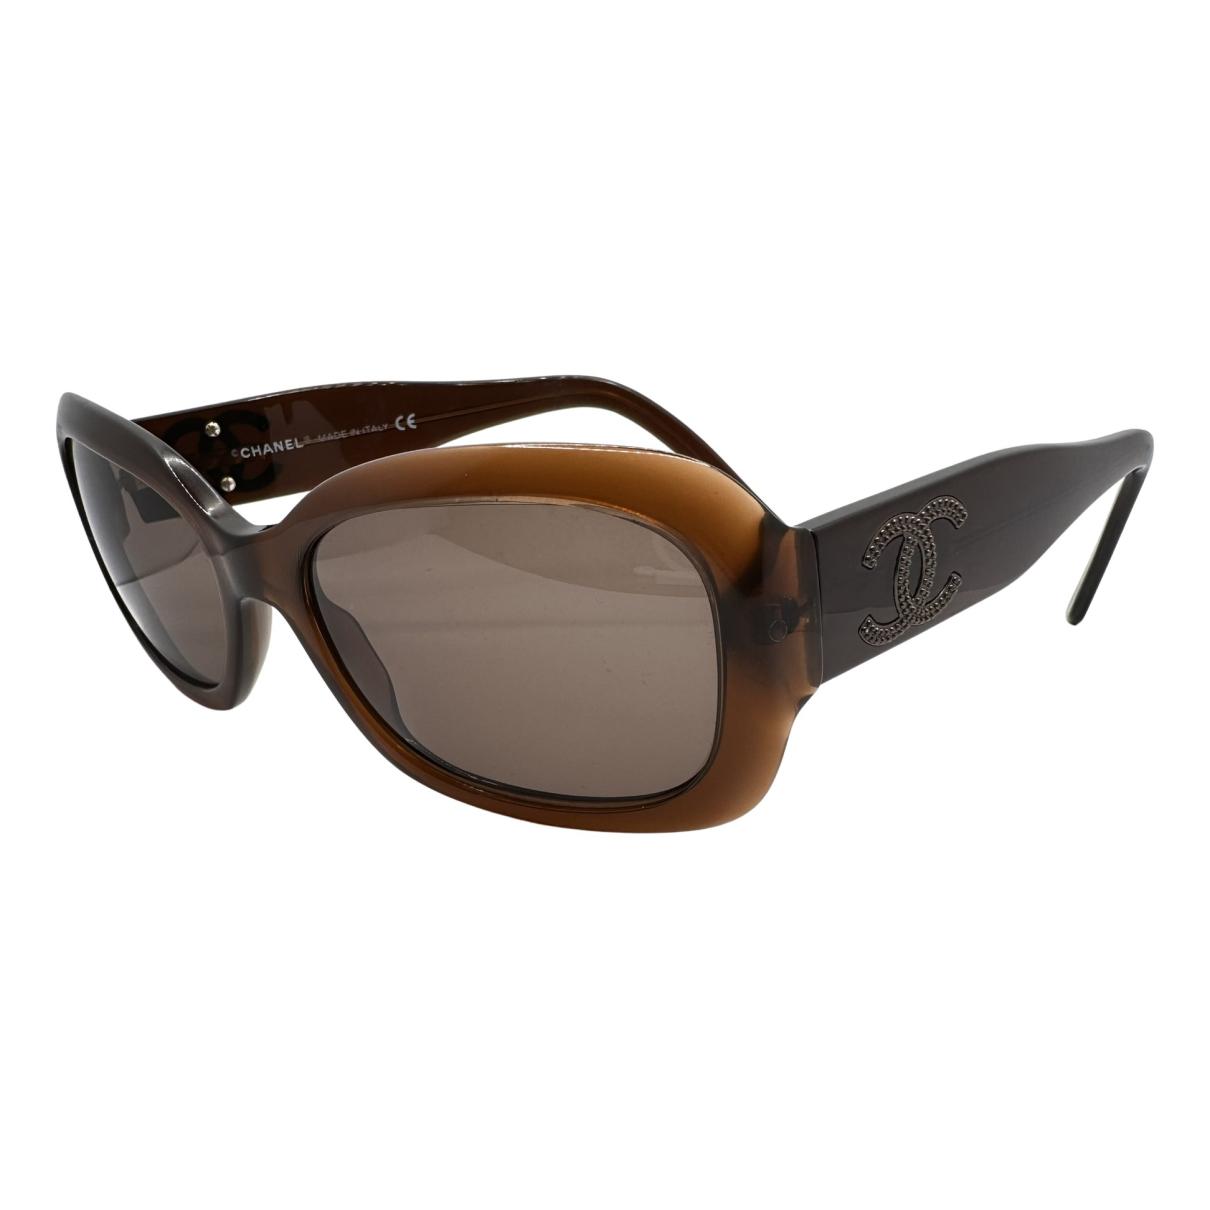 Sunglasses Chanel Brown in Plastic - 29496985